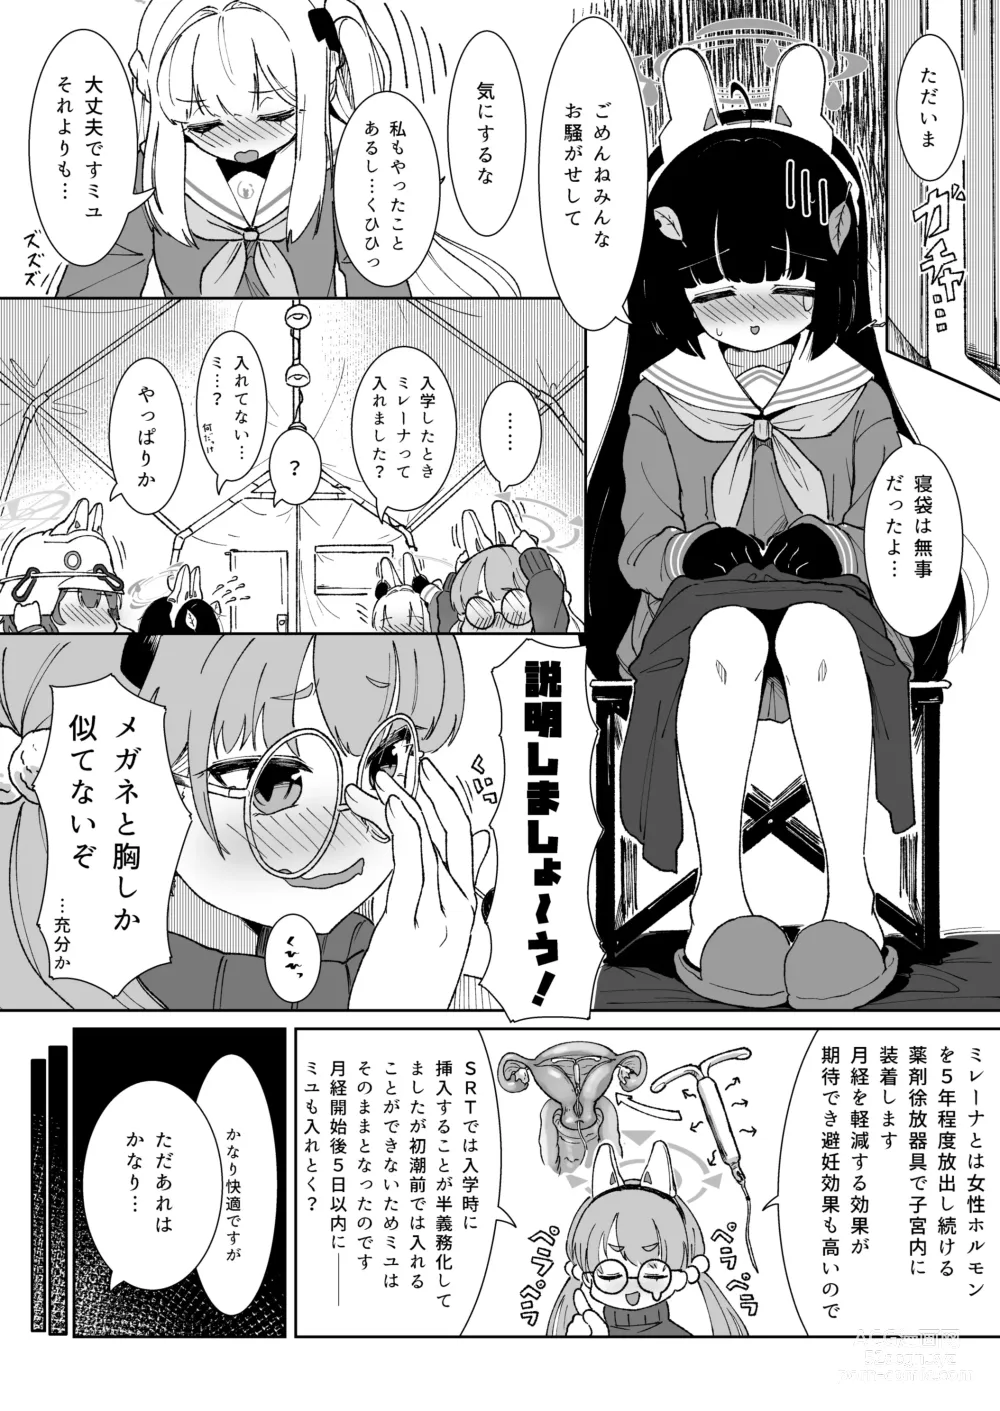 Page 6 of doujinshi Miyu no Otsukisama Jijou - Rabbit 4 Menstruation and Sex Affair